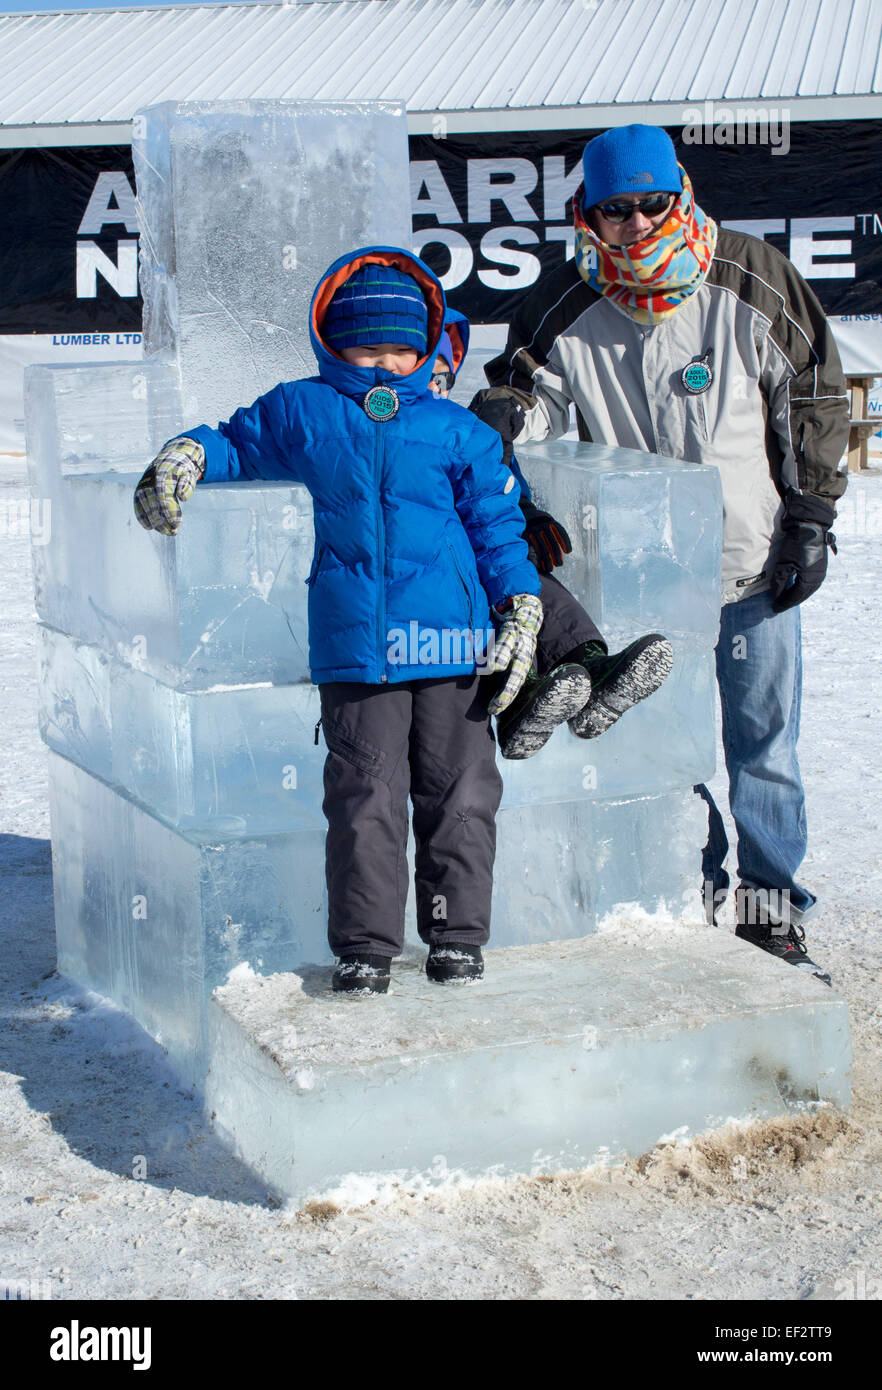 Enfants sur une chaise de glace au Festival d'hiver en Ontario Cannington Banque D'Images